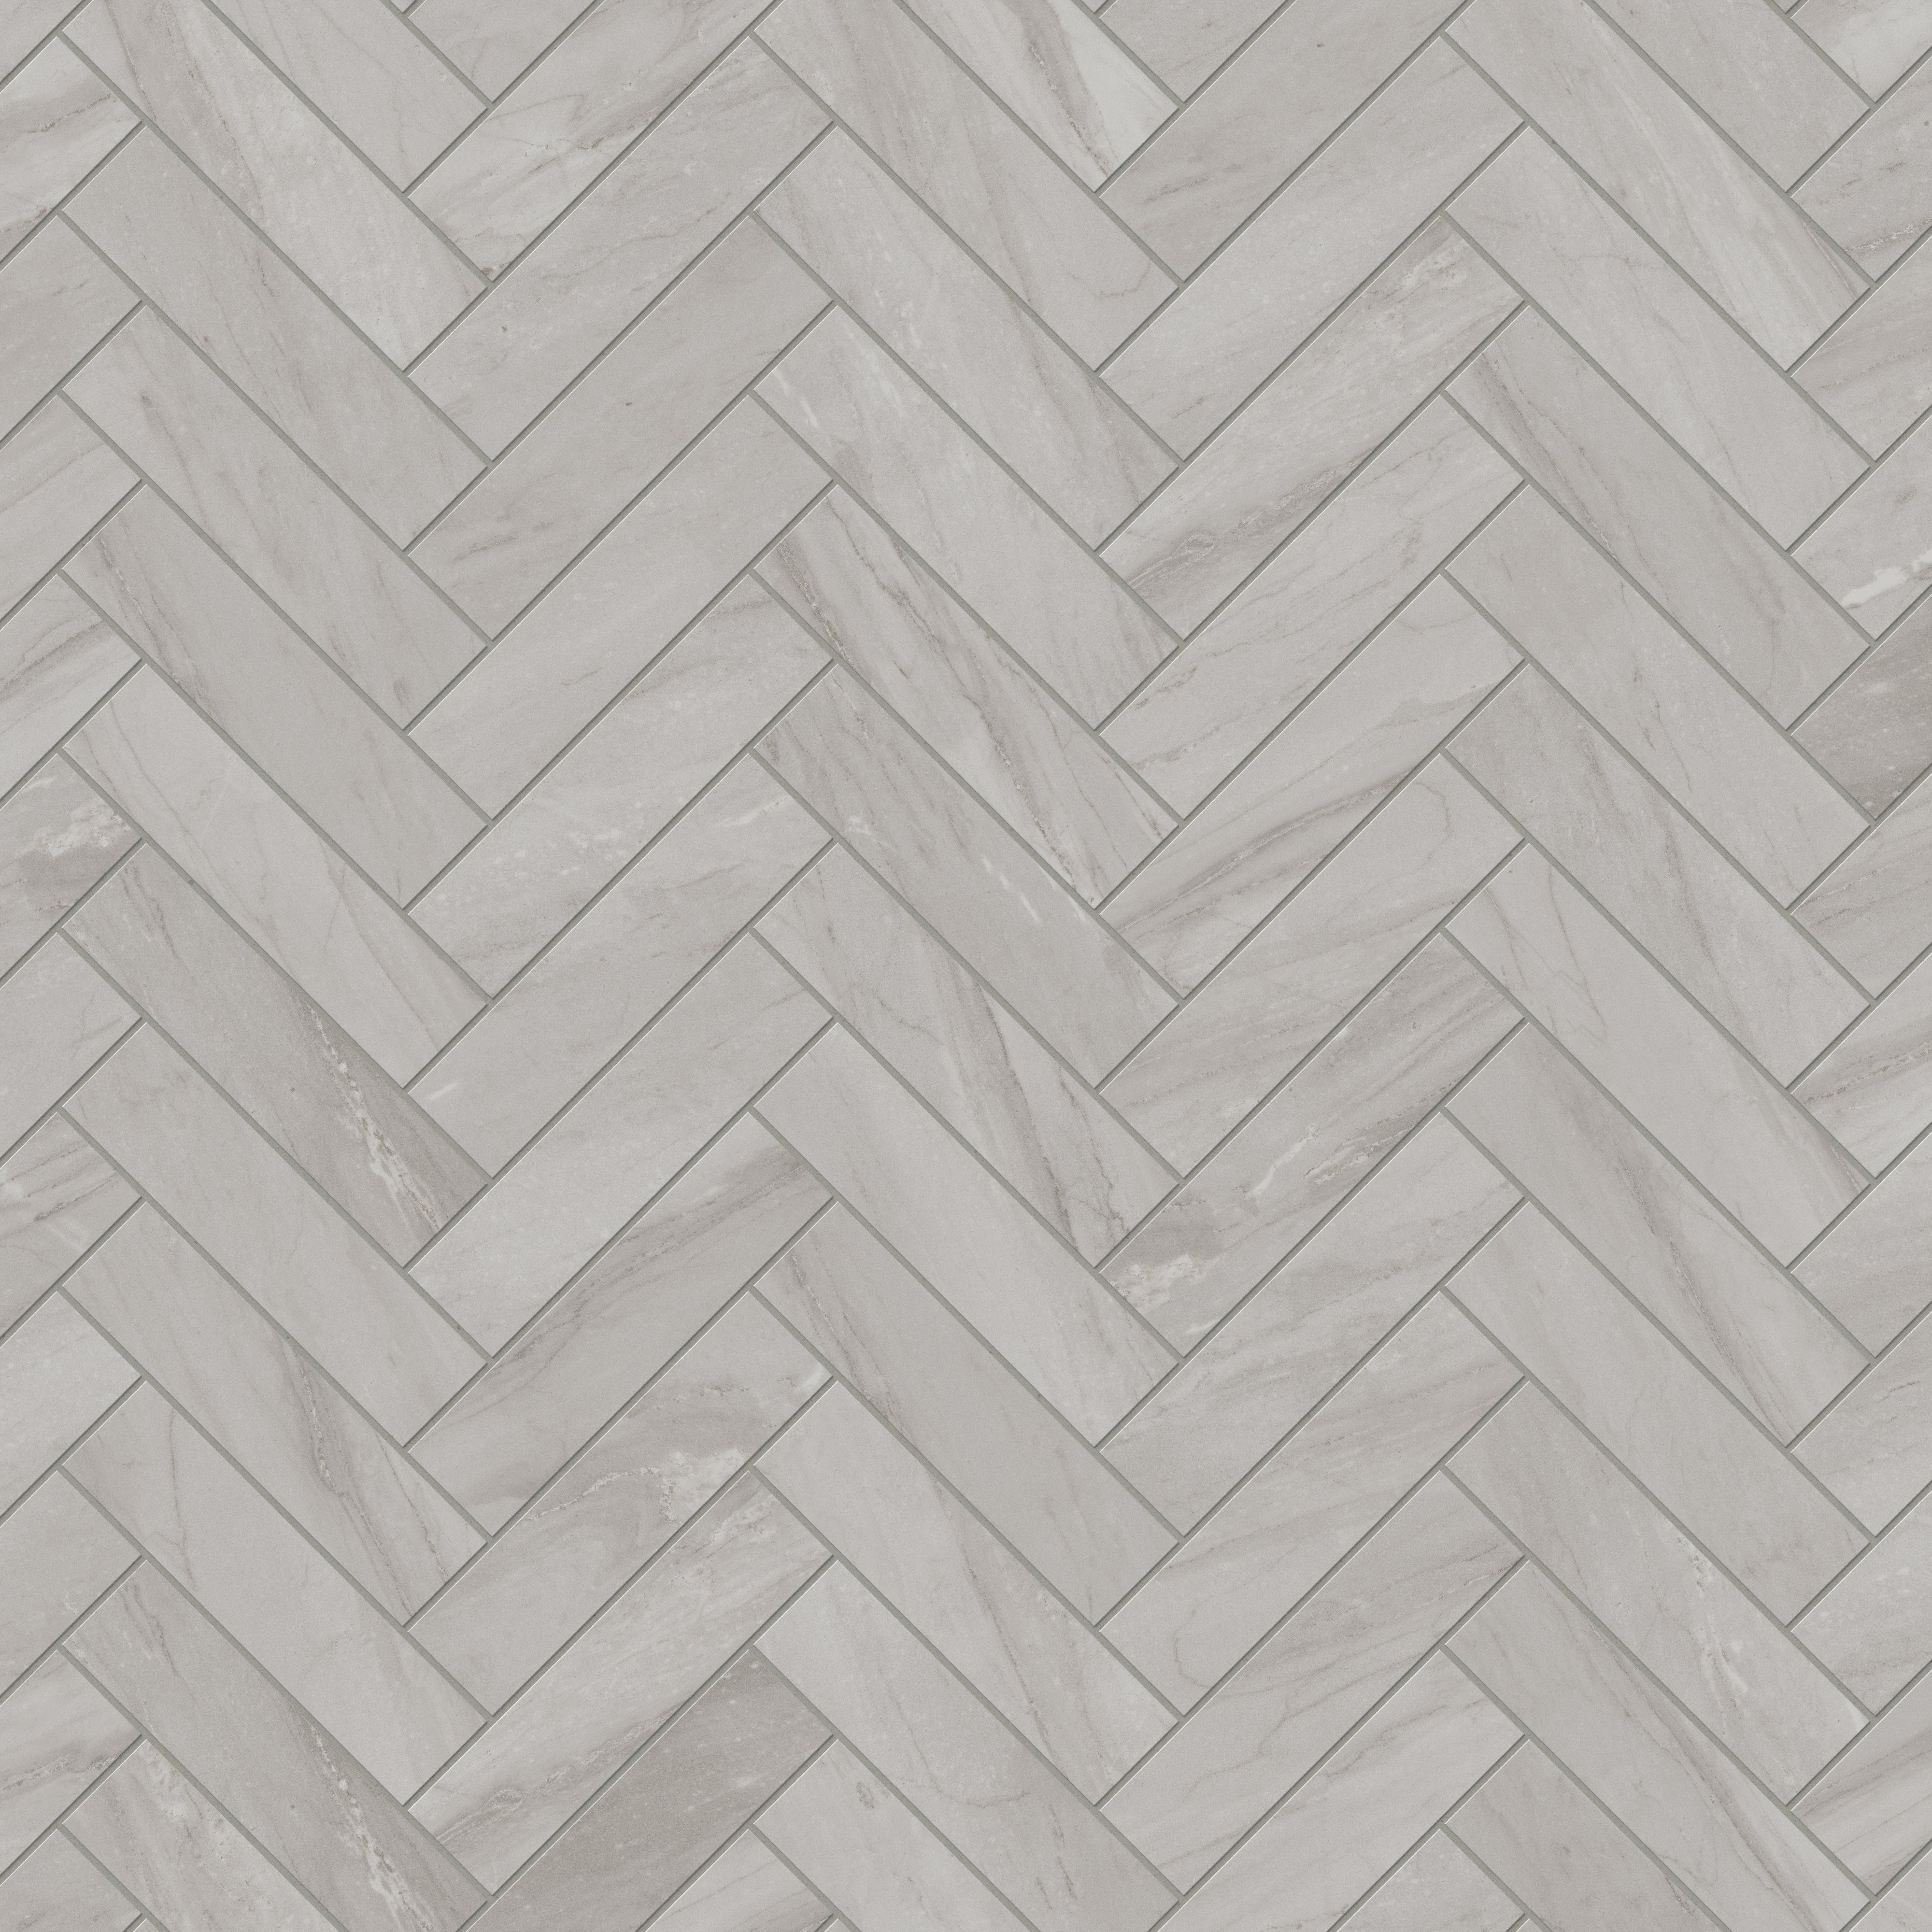 Chantel 3x12 Matte Porcelain Tile in Alaska Grey